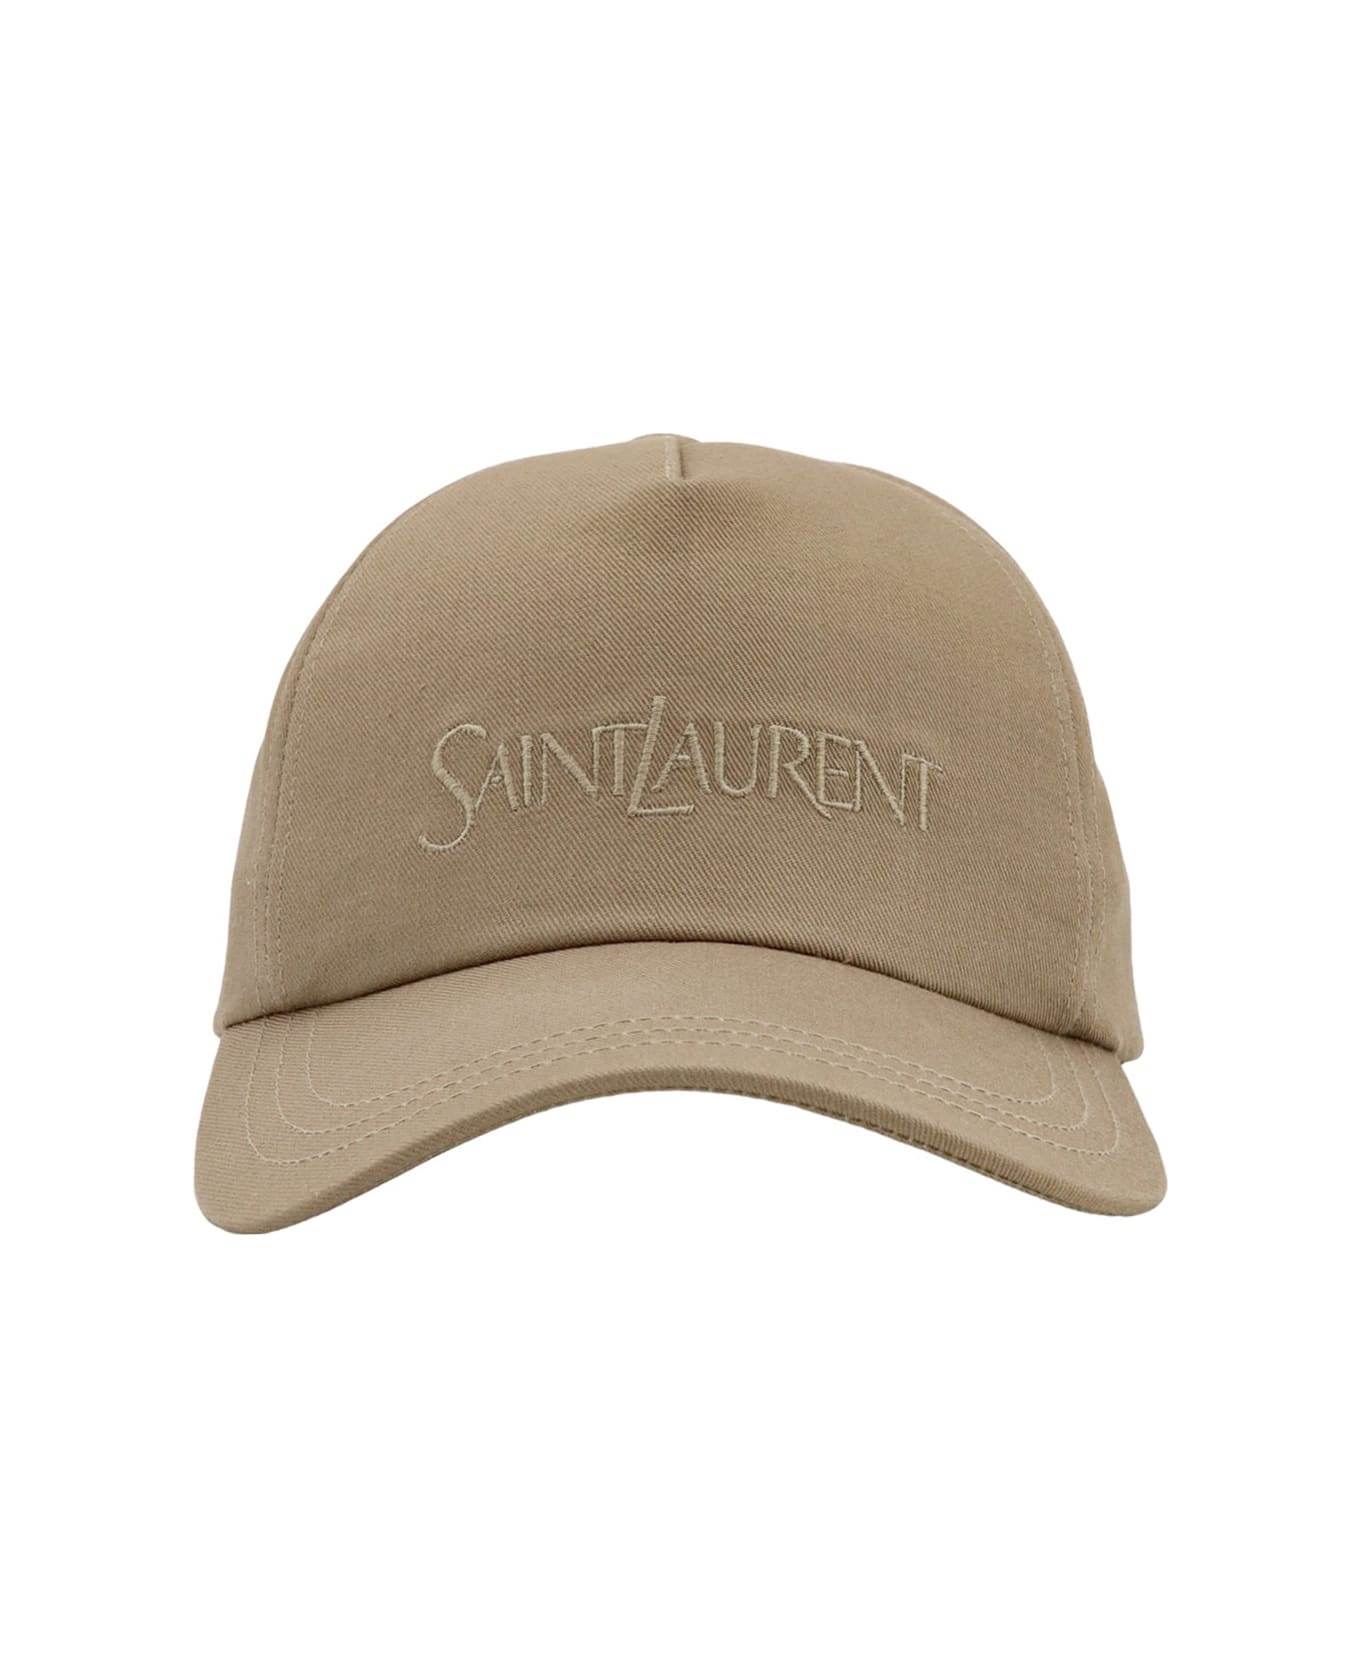 Saint Laurent Baseball Cap - Nude & Neutrals 帽子